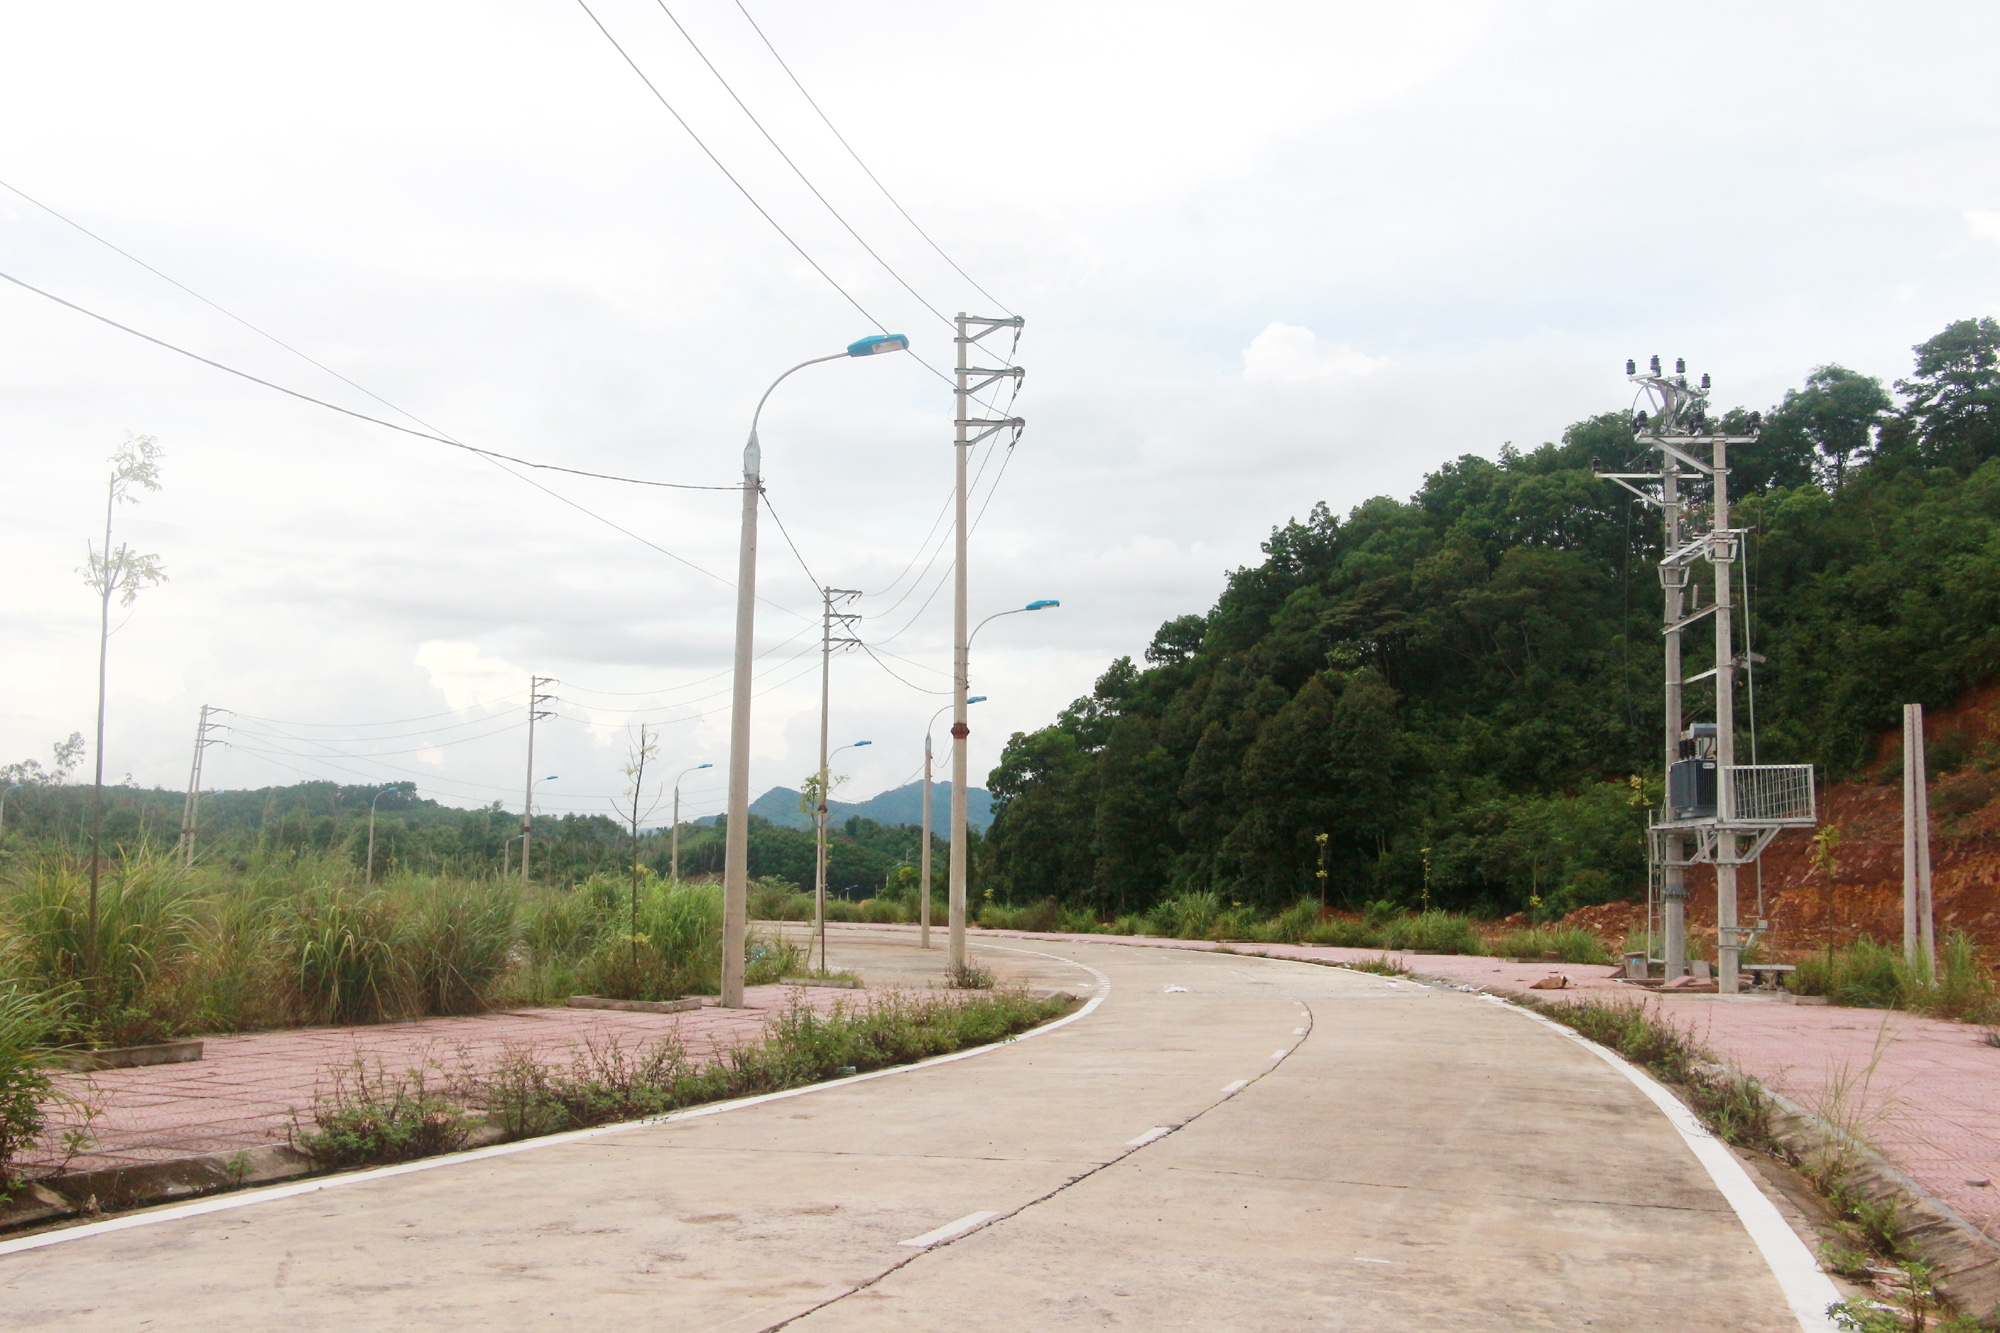 Hệ thống điện, đường giao thông được đầu tư tại khu tái định cư xã Đoàn Kết. Ảnh: Mạnh Trường